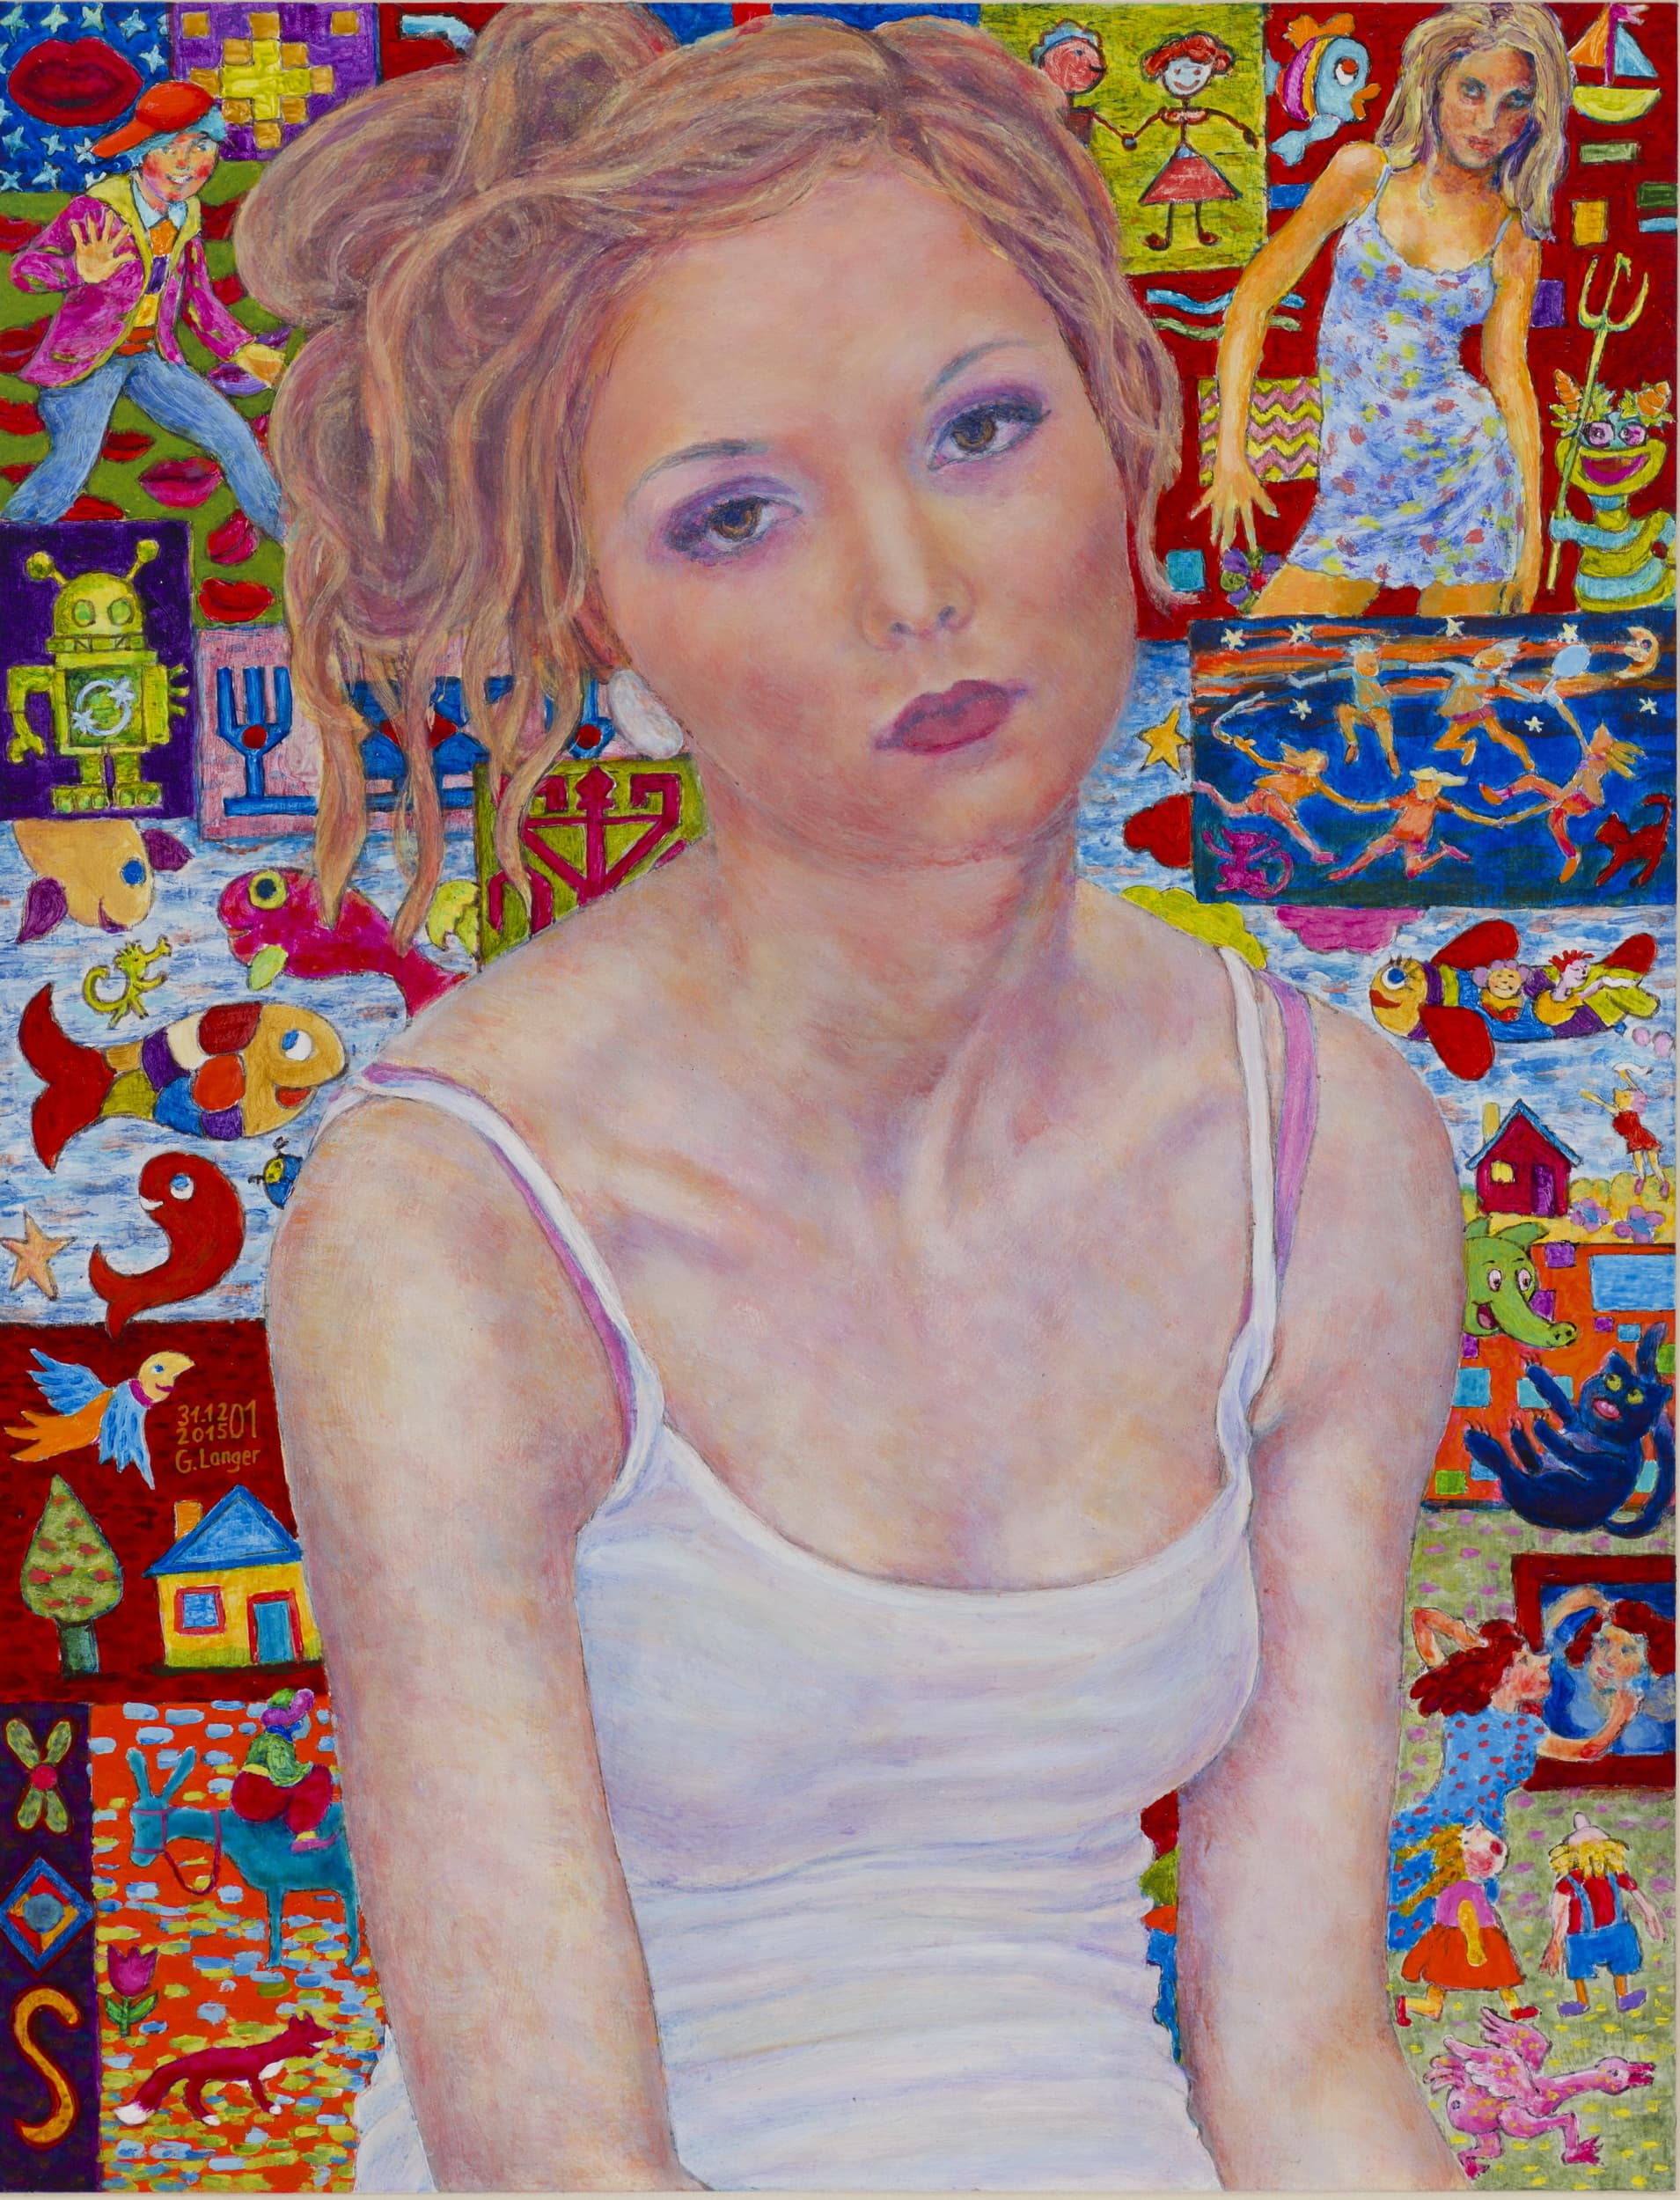 Gunter Langer, sitzende junge Frau im weißen Top, Hintergrund mit Geschichten, Lebensfarben, 2015, Acryl Malerei, Karton, 65 x 50 cm